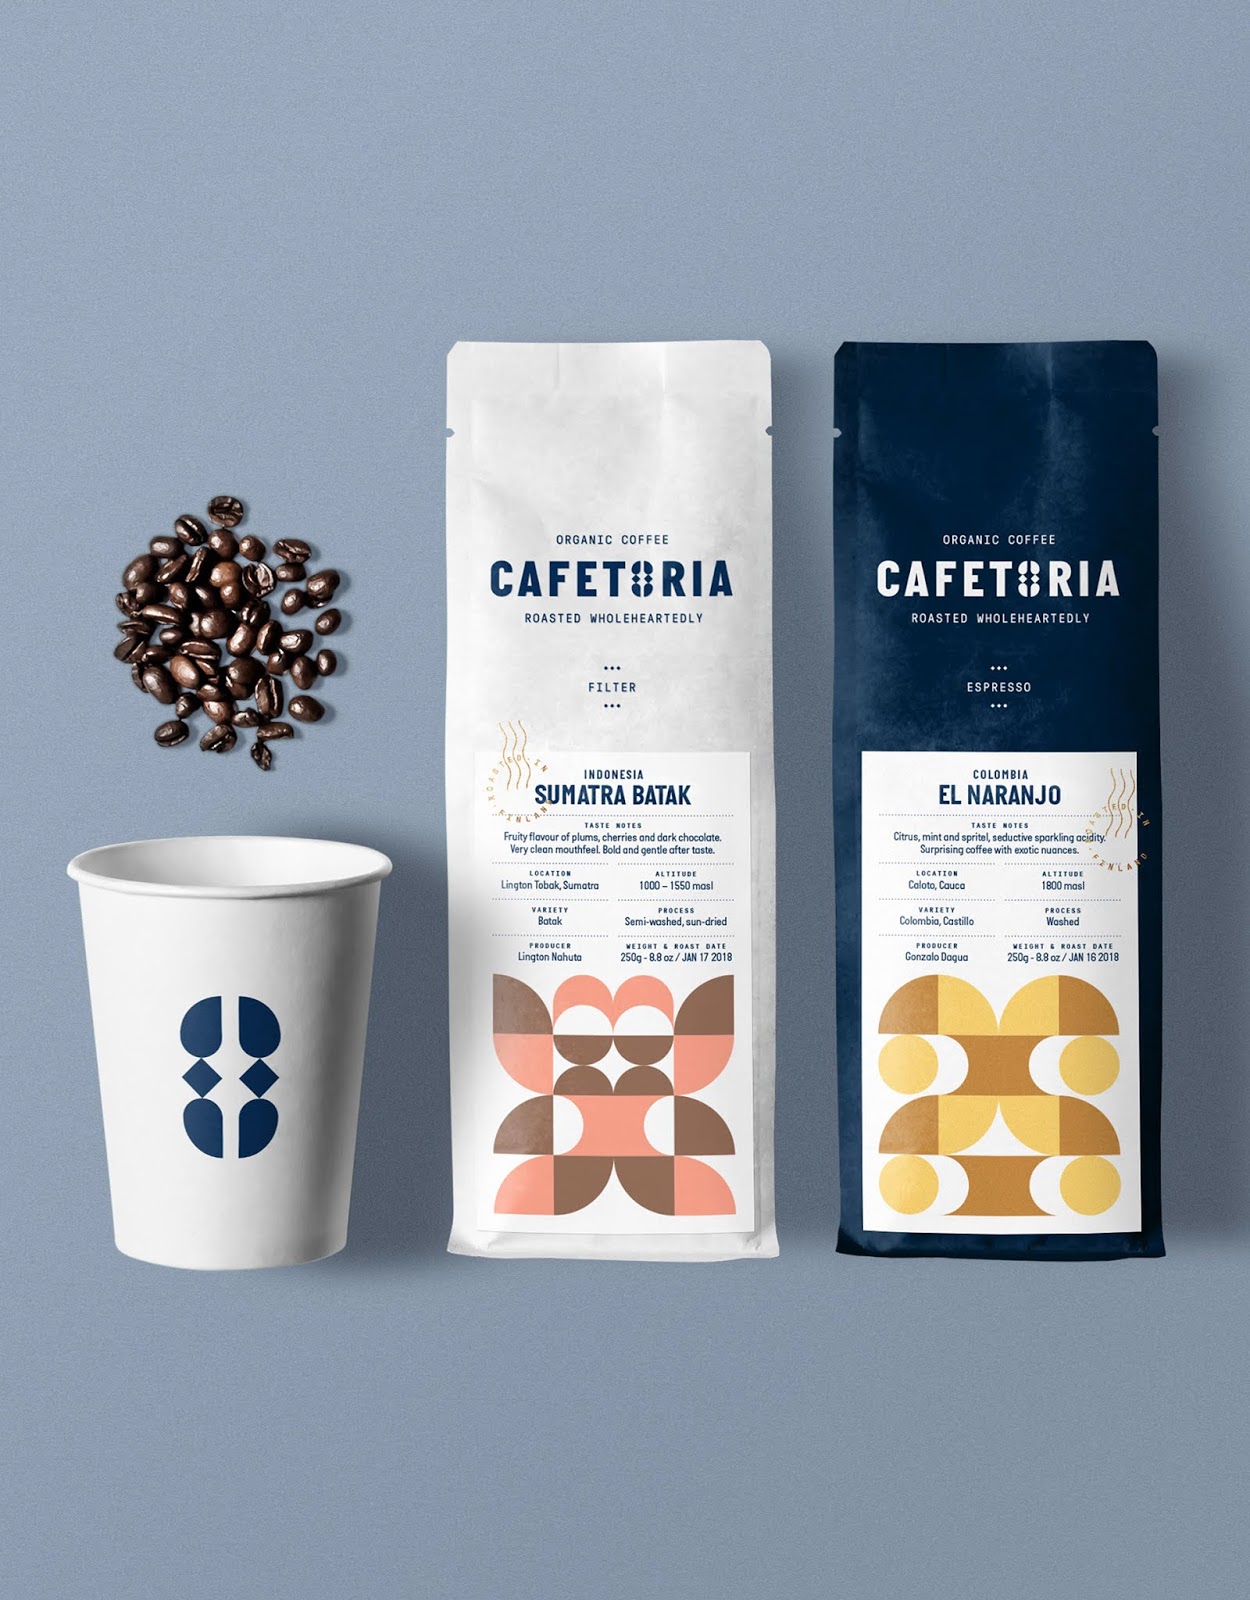 美洲小型咖啡西安oe欧亿体育app官方下载
品牌包装设计